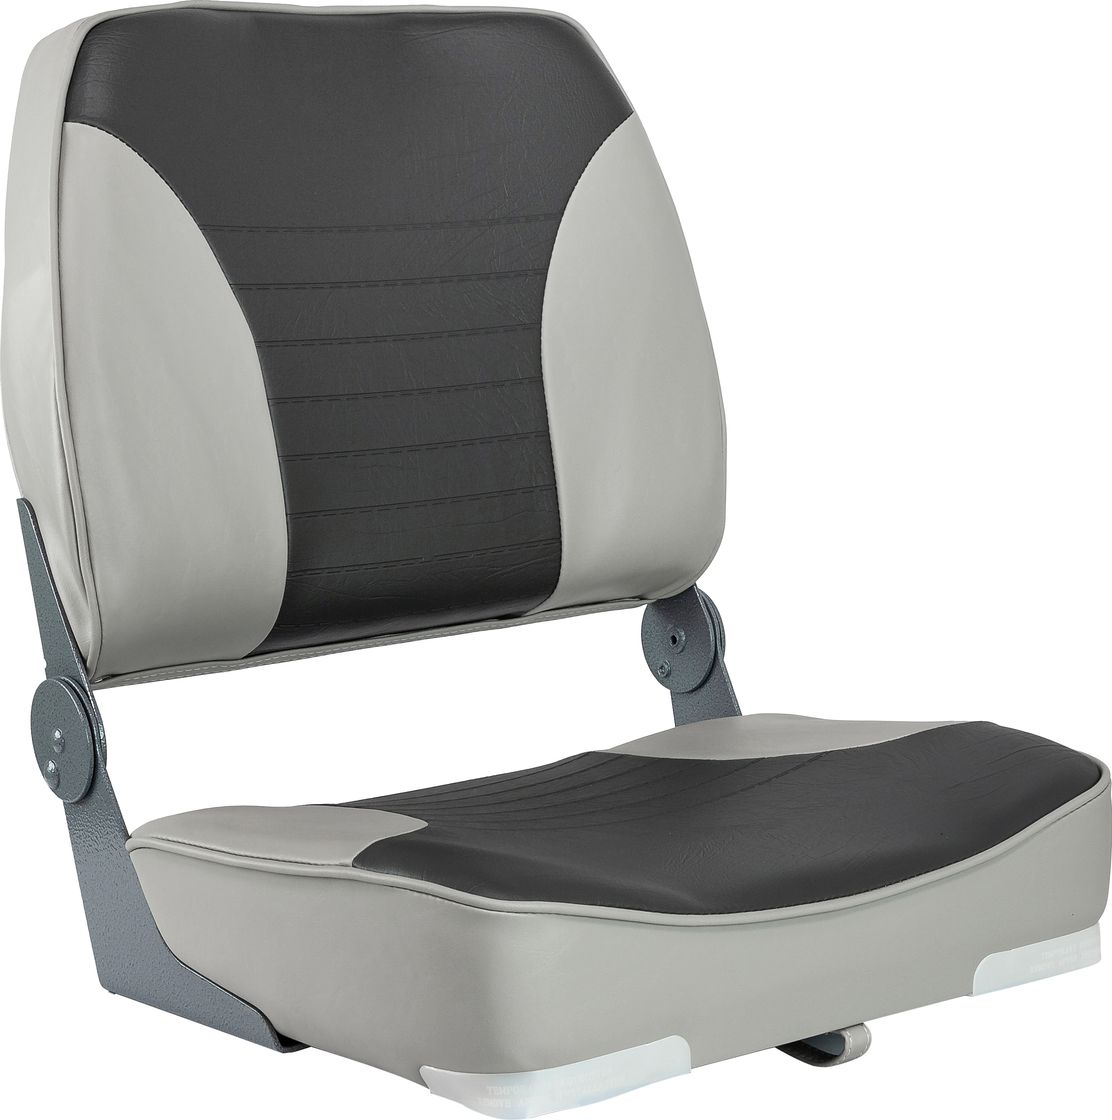 Кресло XXL складное мягкое двухцветное серый/темно-серый 1040693 кресло складное мягкое skipper серый темно серый 1061057